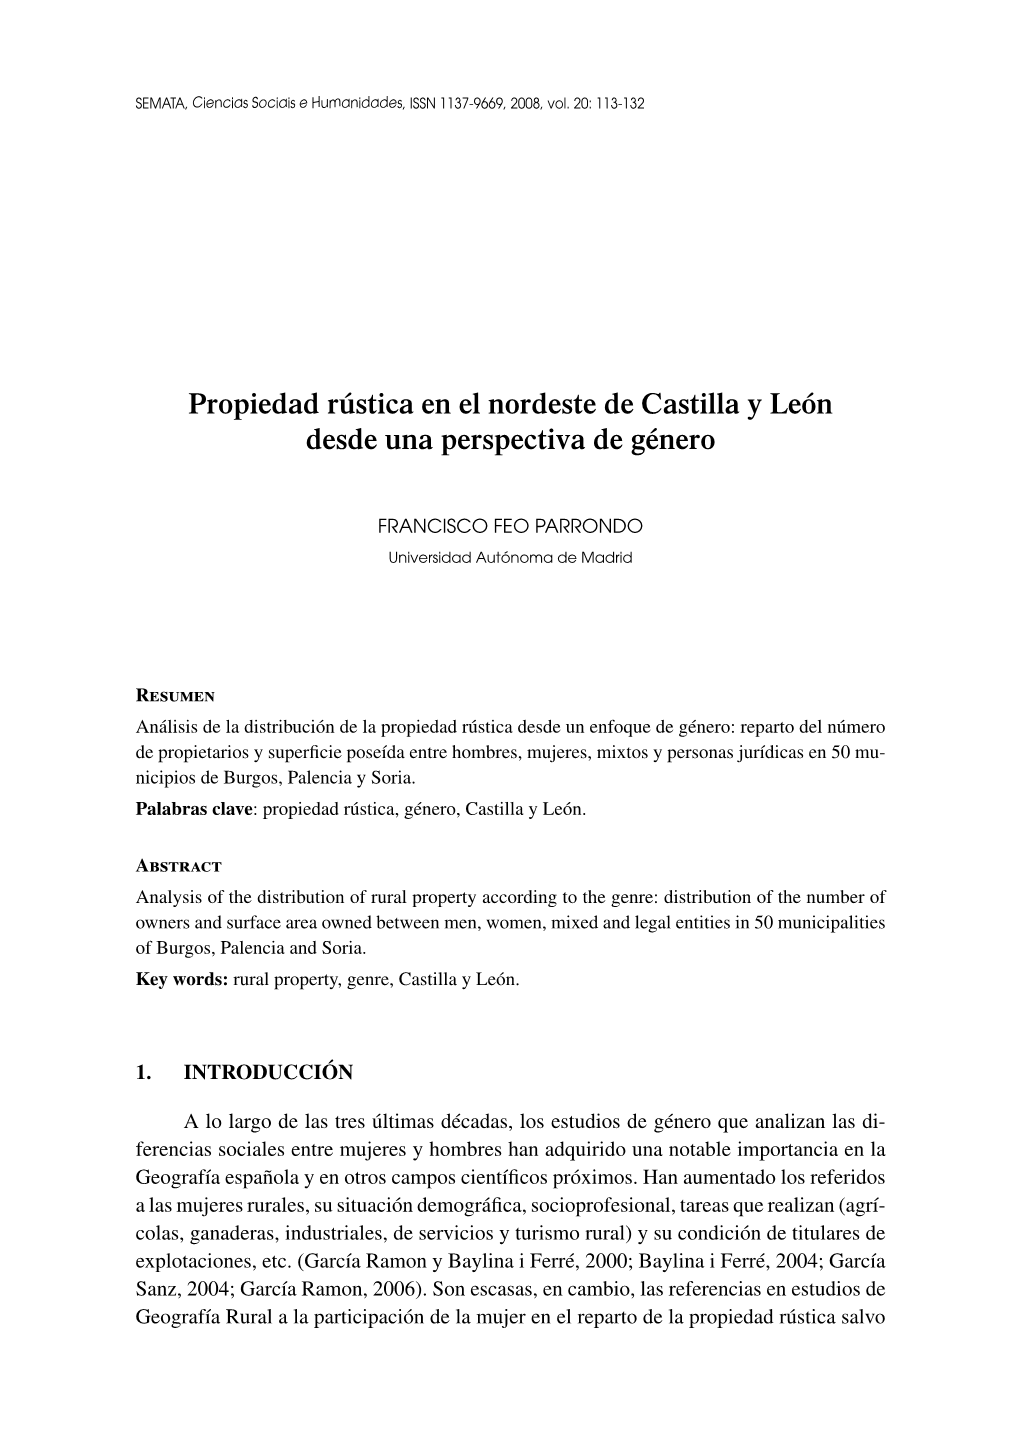 Propiedad Rústica En El Nordeste De Castilla Y León Desde Una Perspectiva De Género